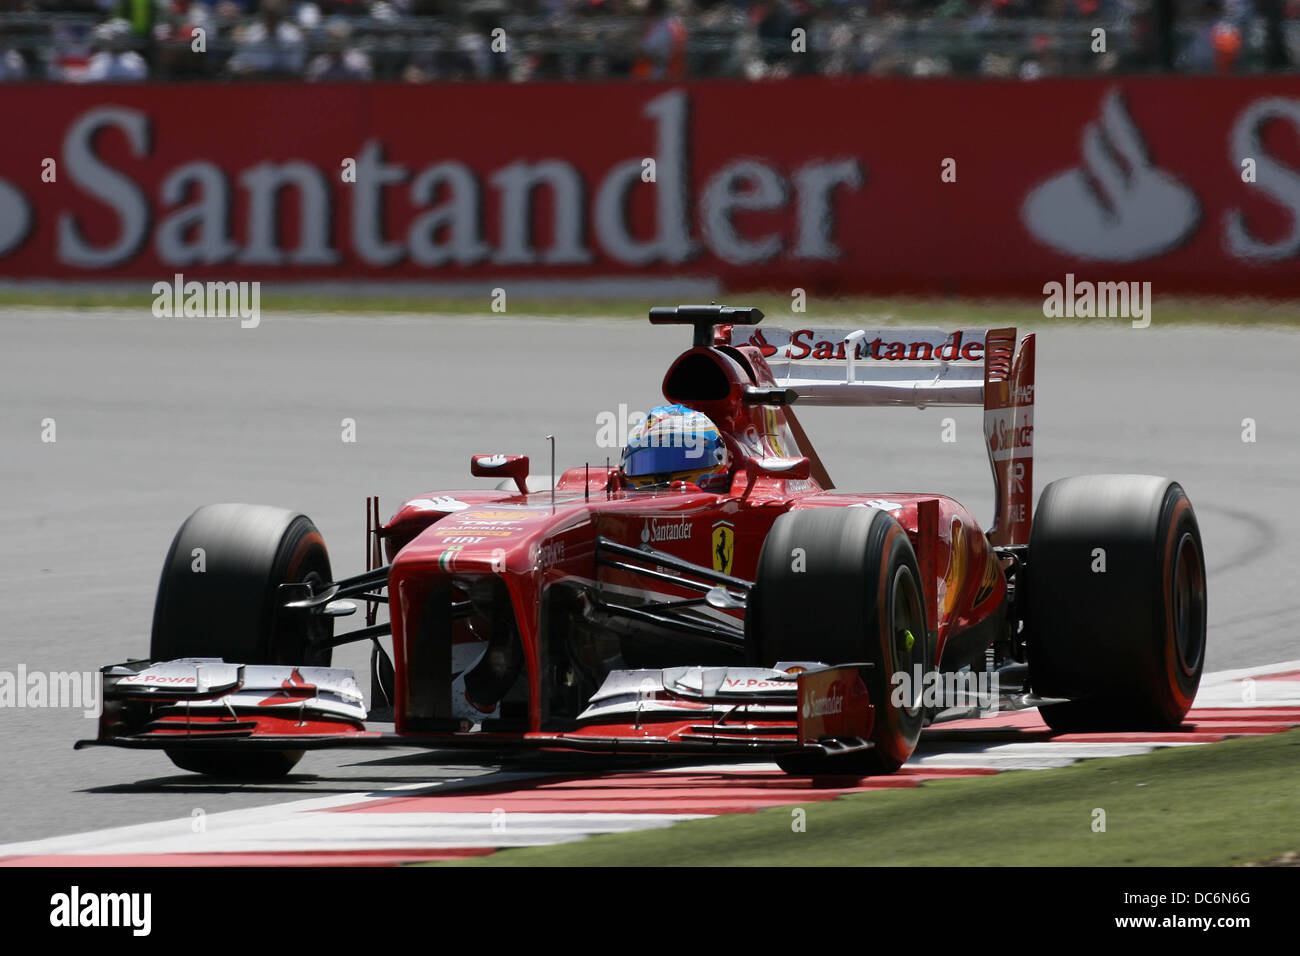 Fernando Alonso, Ferrari F1 at the 2013 F1 British Grand Prix, Silverstone. Stock Photo